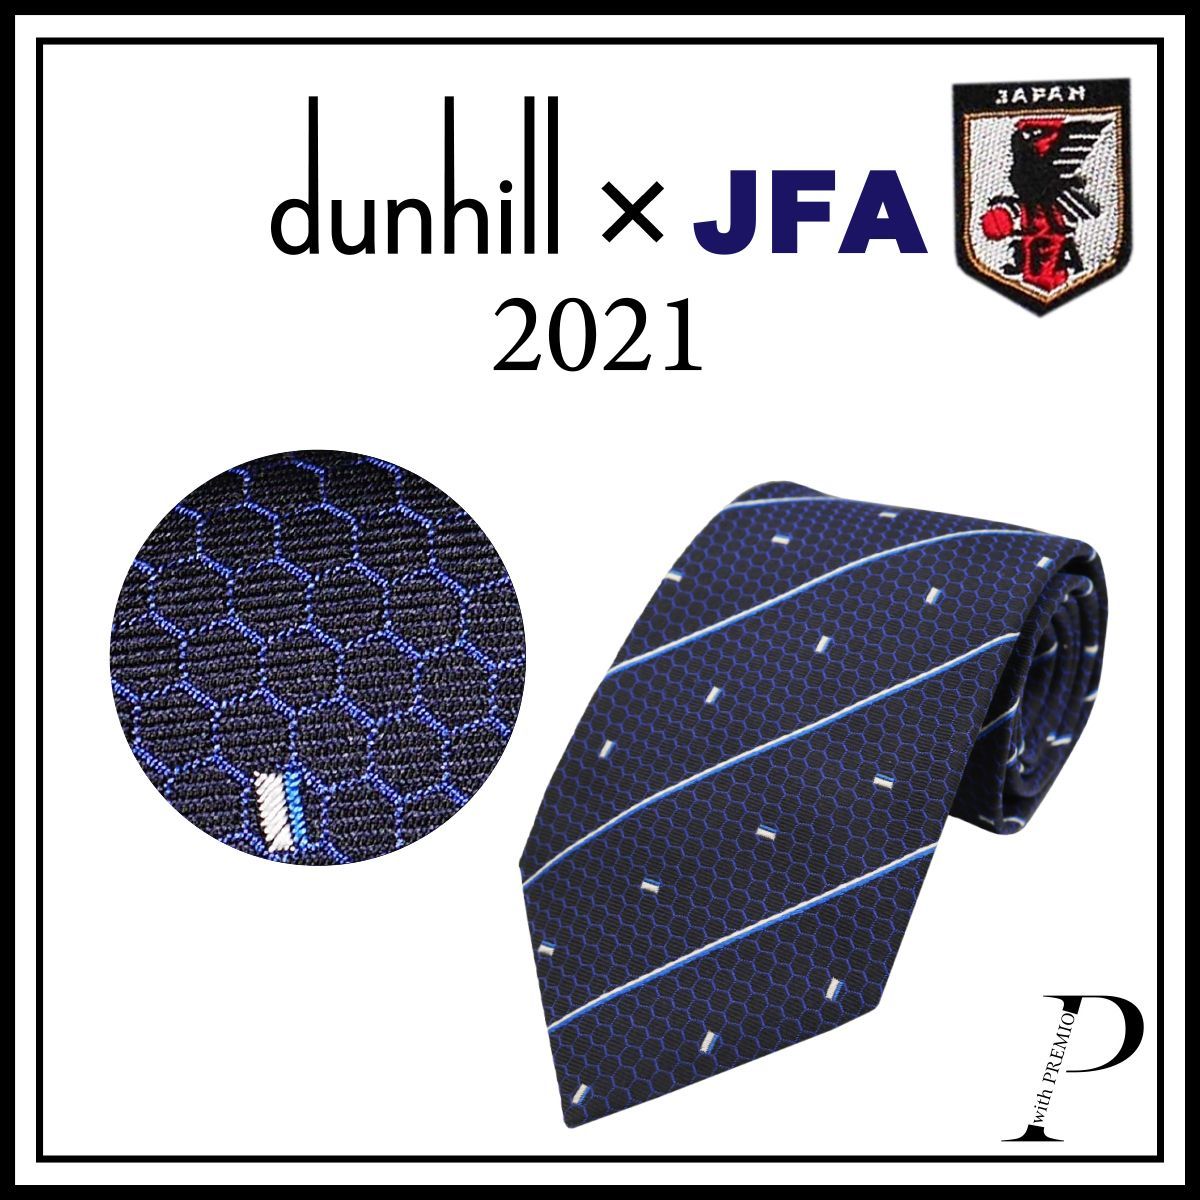 ☆【新品】【ダンヒル JFA ネクタイ】【2021年】 dunhill ダンヒル